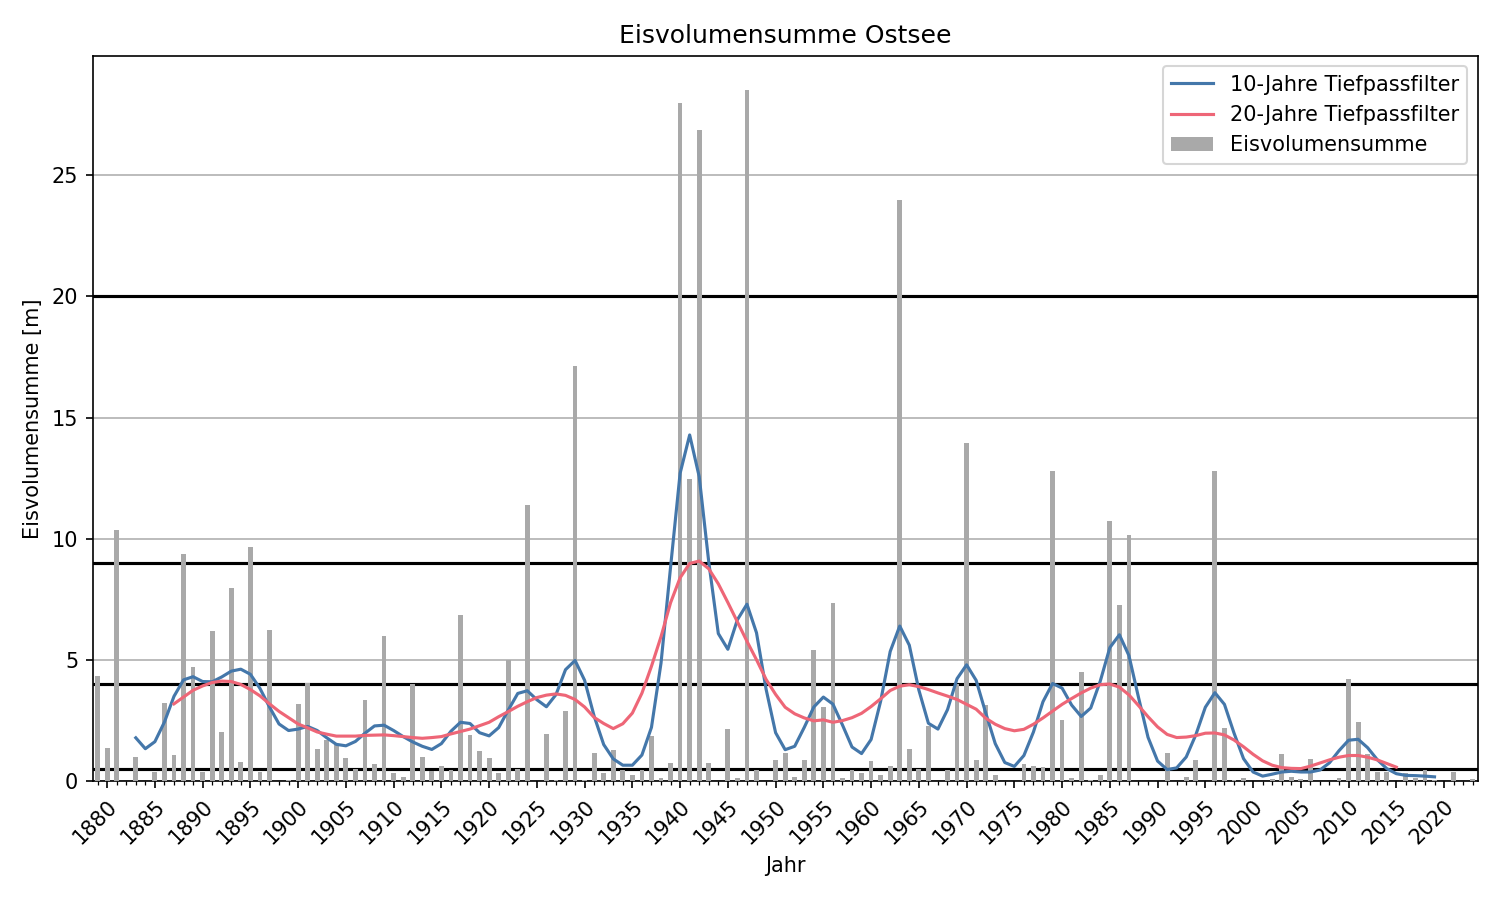 Zeitreihe der Eisvolumensumme an der Ostseeküste seit 1879.